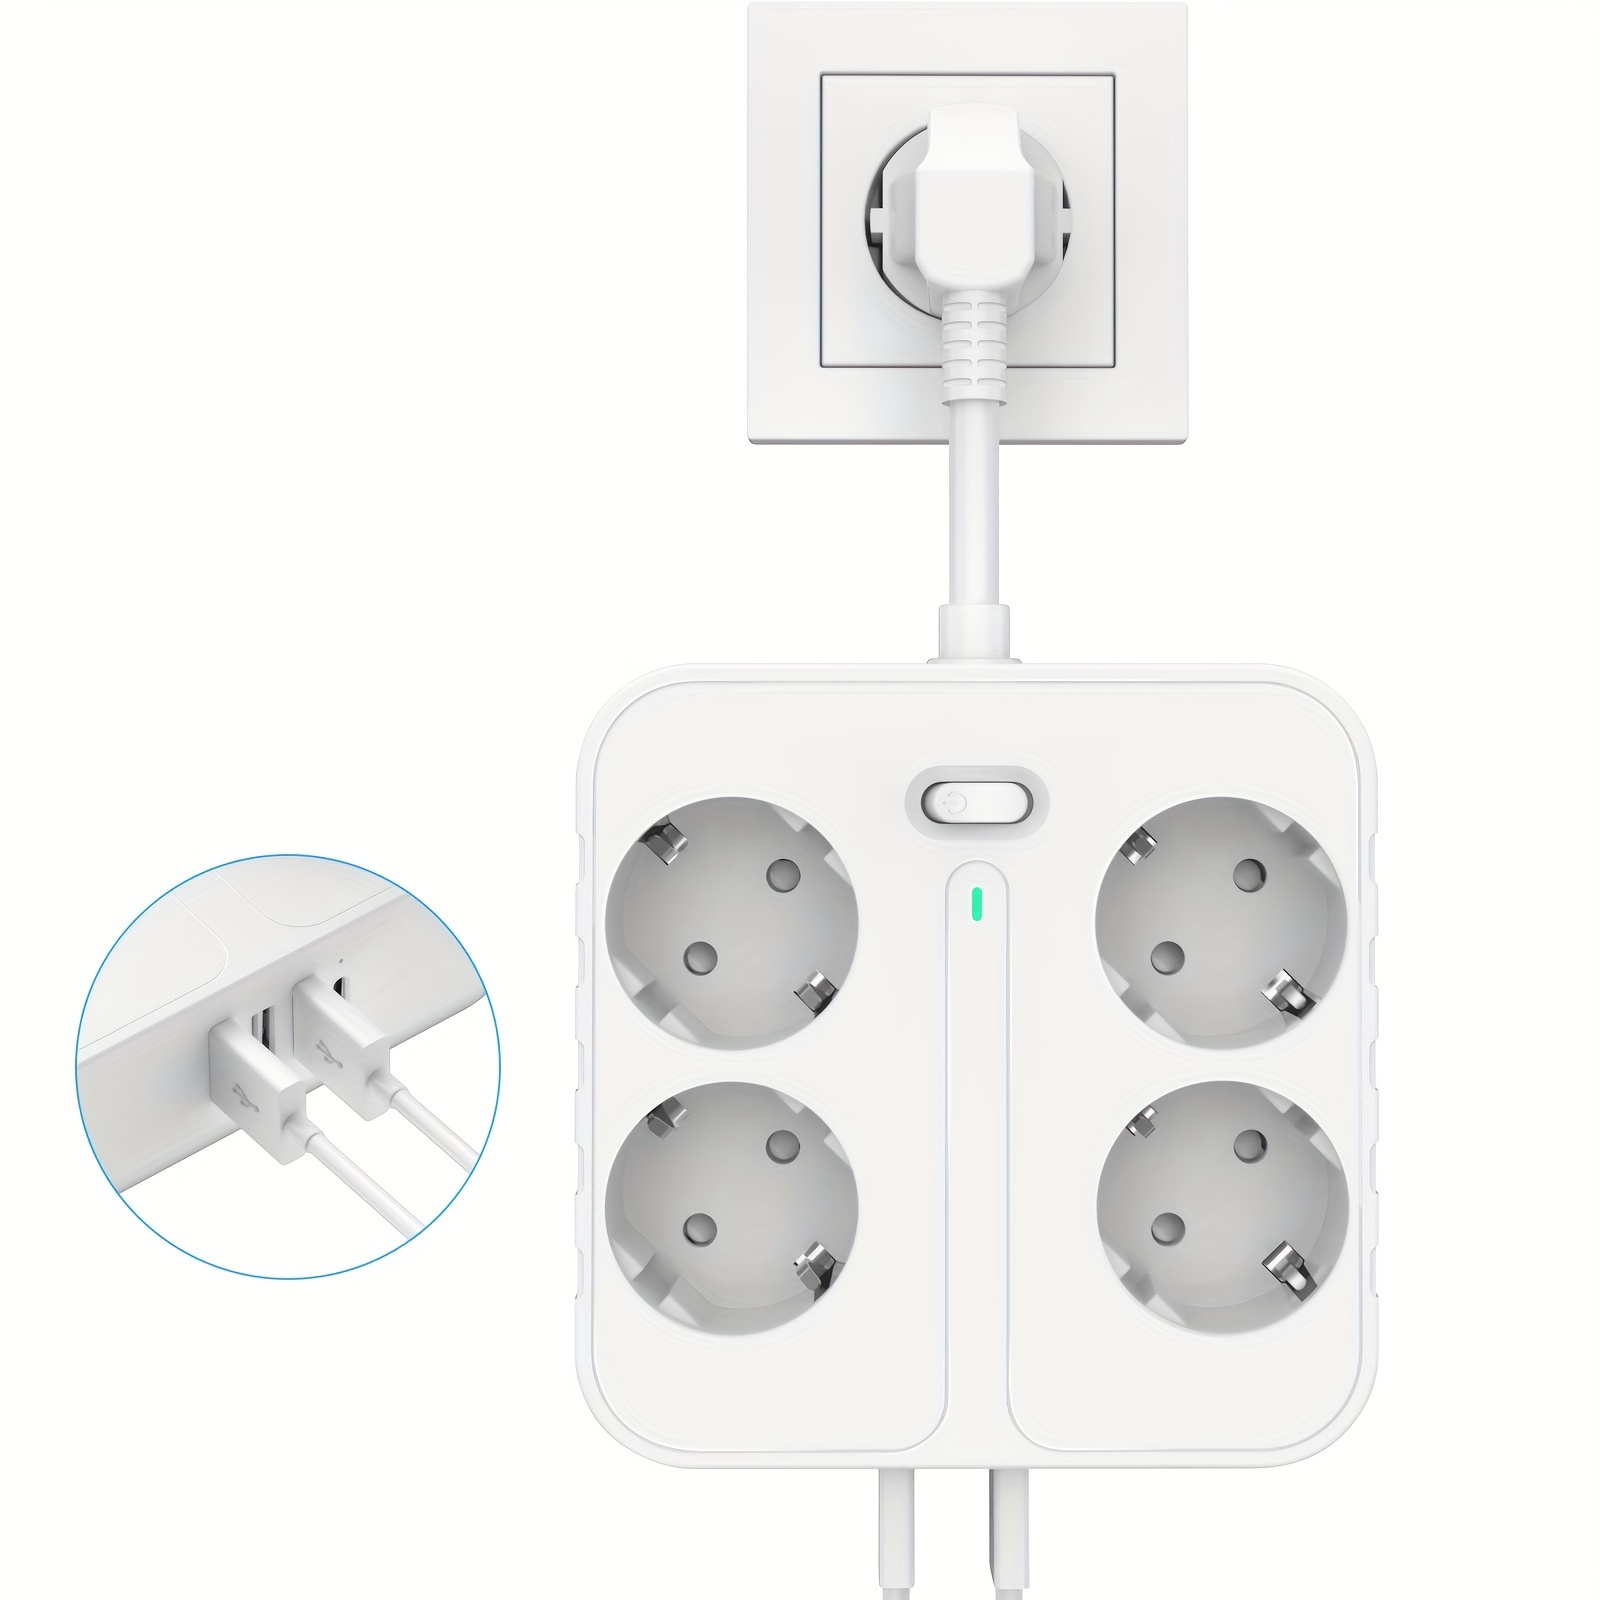  Regleta de alimentación de 6 enchufes con puertos USB y montaje  debajo del escritorio o en la pared - Negro : Electrónica